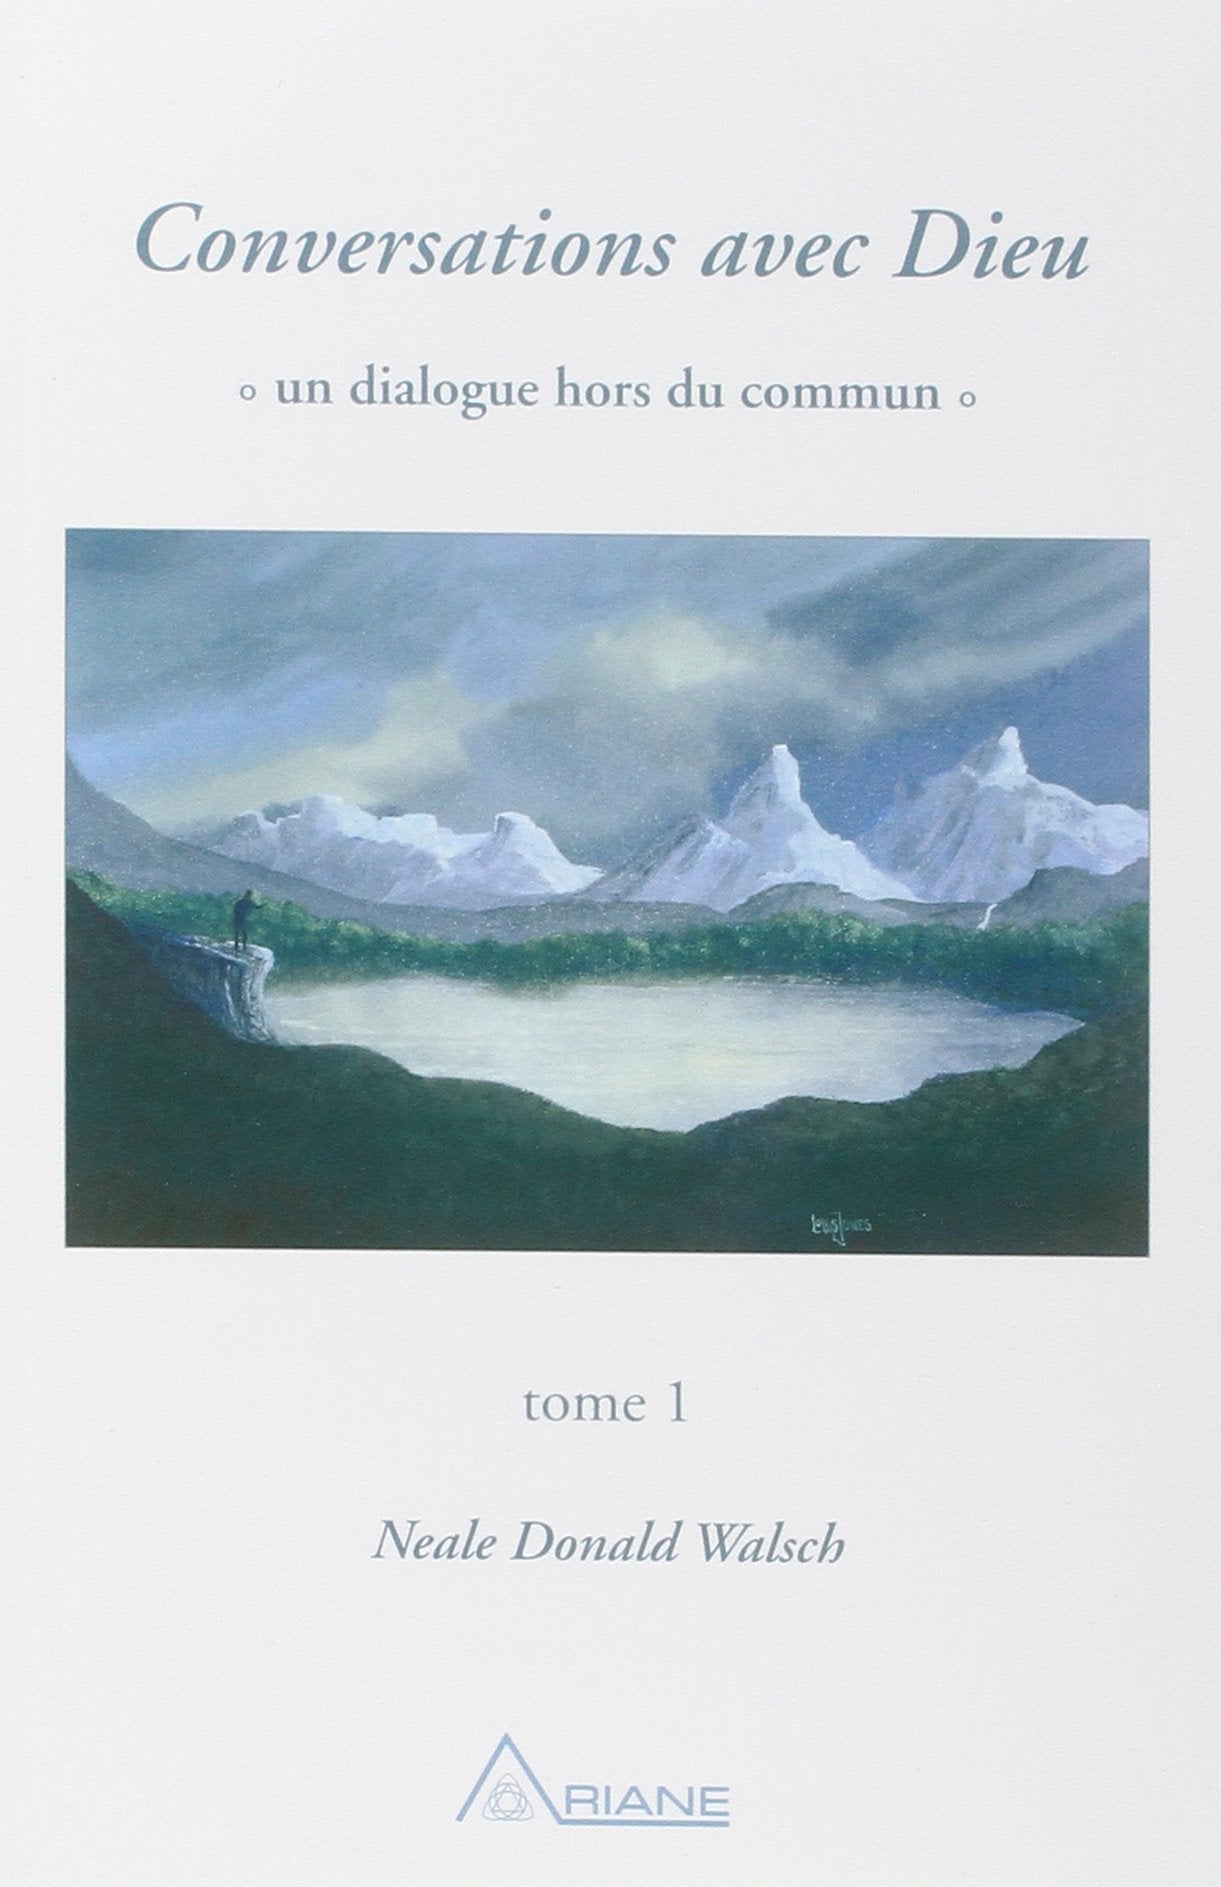 Livre ISBN 2920987208 Conversation avec Dieu : Un dialogue hors du commun # 1 (Neale Donald Walsch)